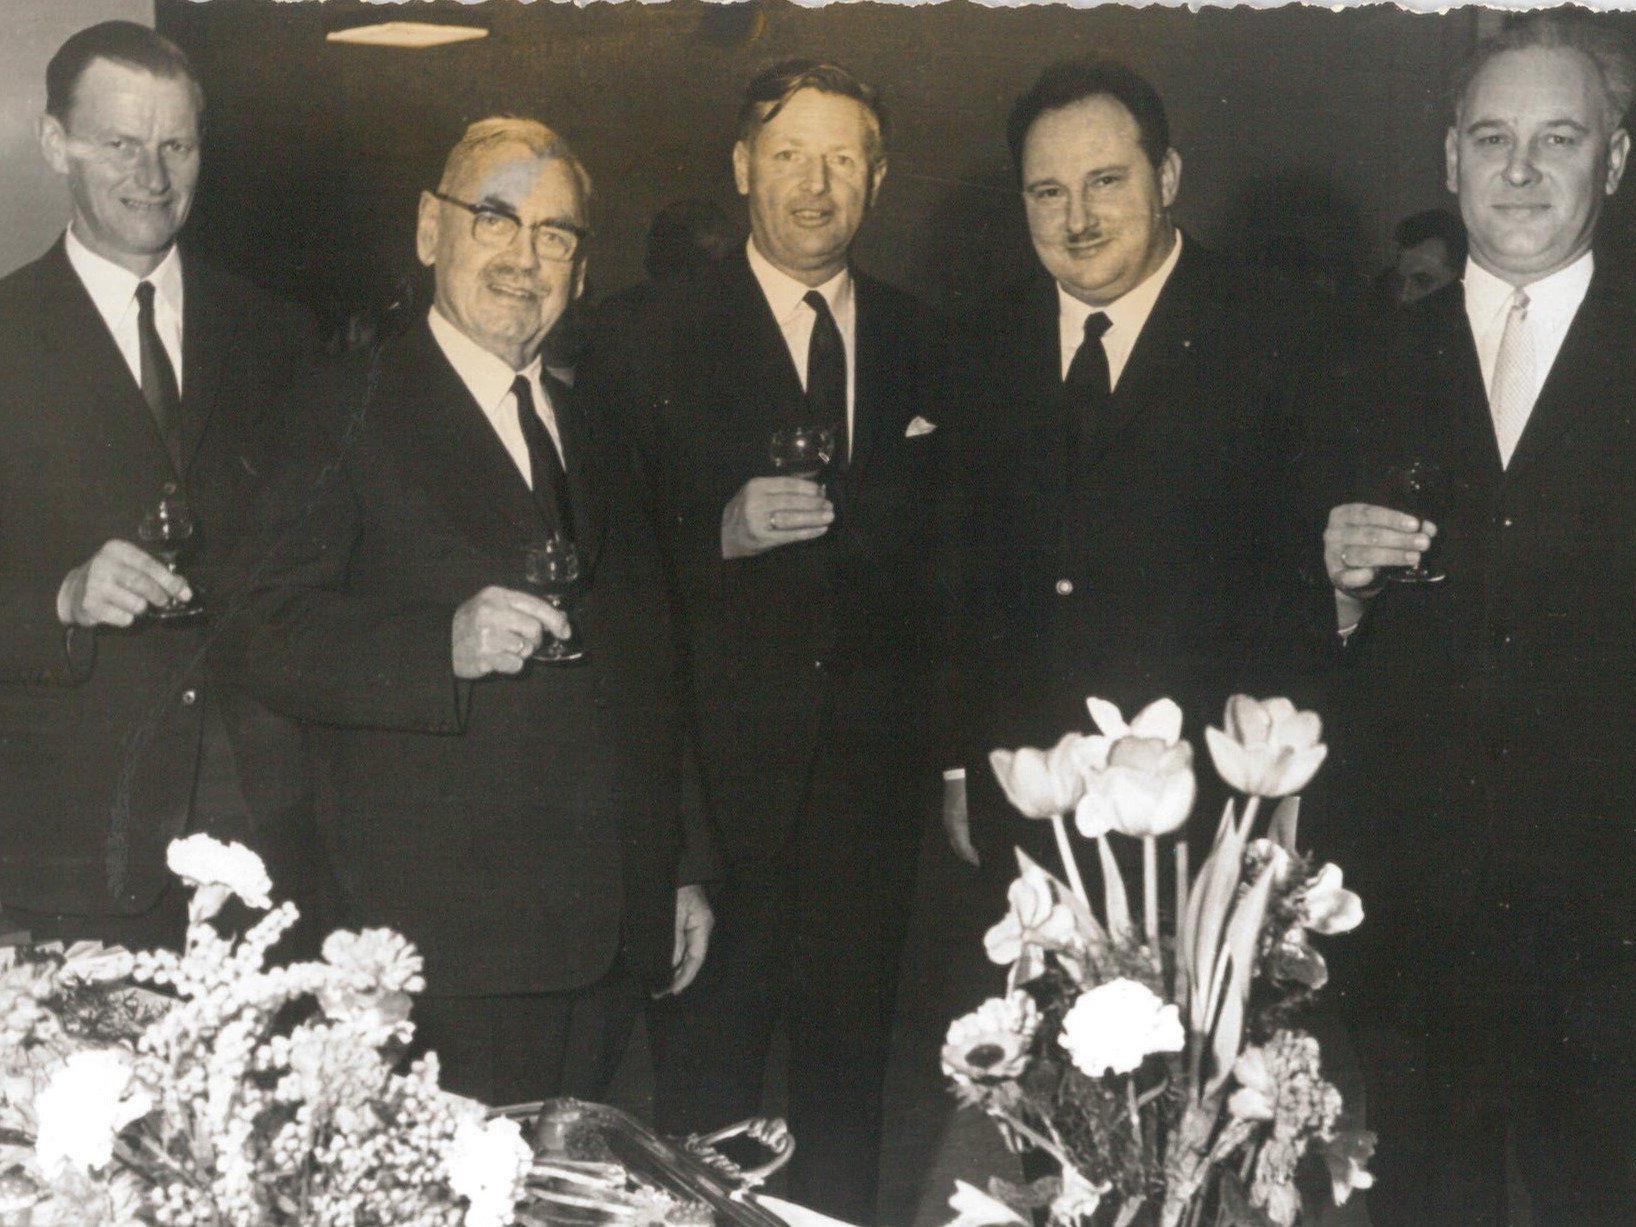 Der damalige Lochauer Bürgermeister Michael Mangold (2. von links) mit Bgm. Josef Degasper (Eichenberg), Bgm. Dr. Karl Tizian (Bregenz), Gemeinderat Josef Rupp (Lochau) und Bgm. Severin Sigg (Hörbranz) bei der Verleihung der Ehrenbürgerschaft am 11. März 1967.